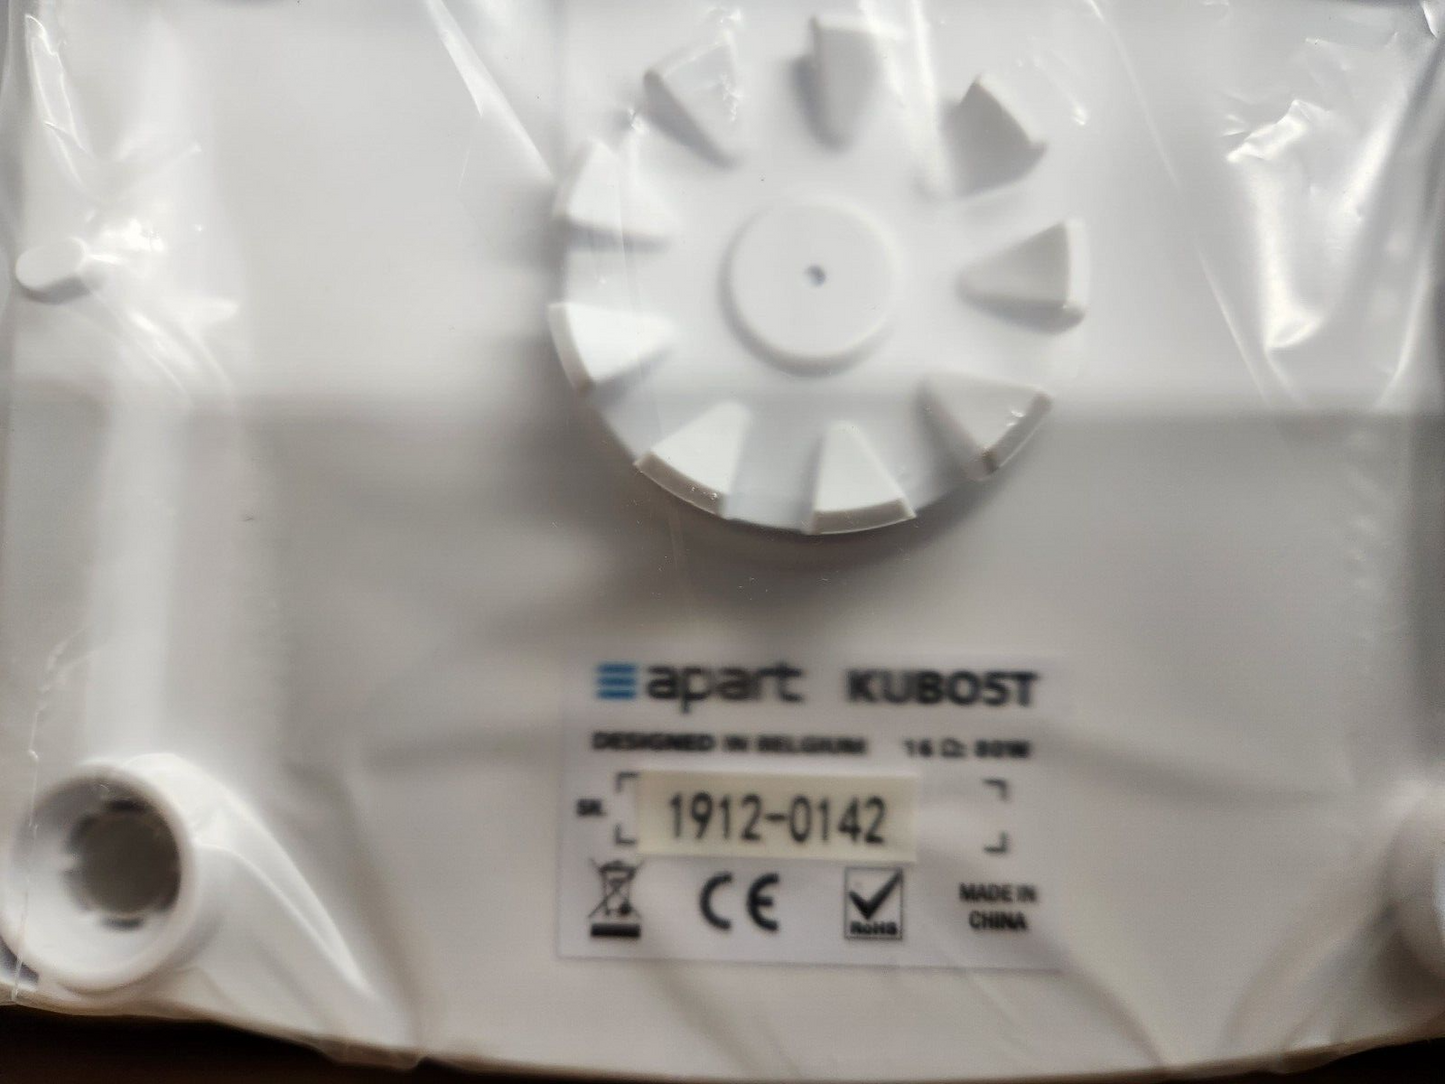 Biamp KUBO5T TWO-WAY 5.25-Inch Surface Mount Loudspeaker 911.0690.900 PAIR White